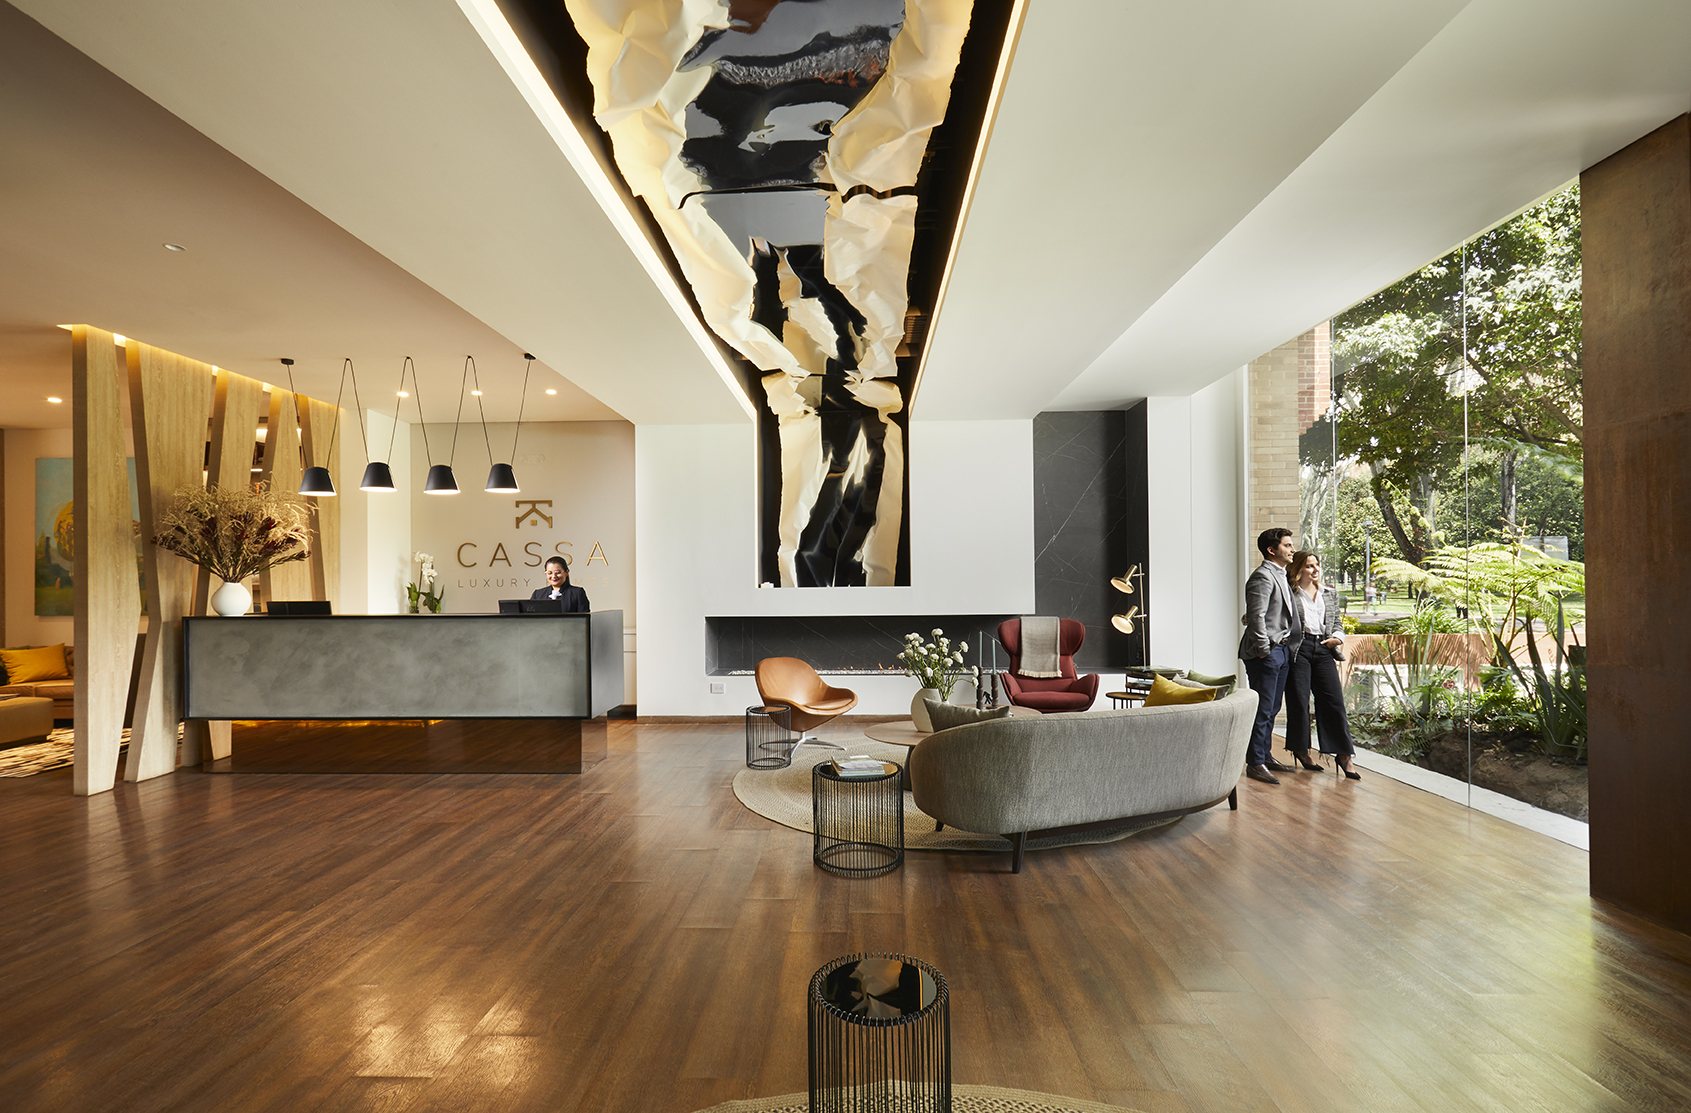 Descubra Cassa Luxury Homes, un nuevo concepto de apartamentos Long Stay en Bogotá en el Parque El Virrey para alojamiento de lujo. ¡Reserva!